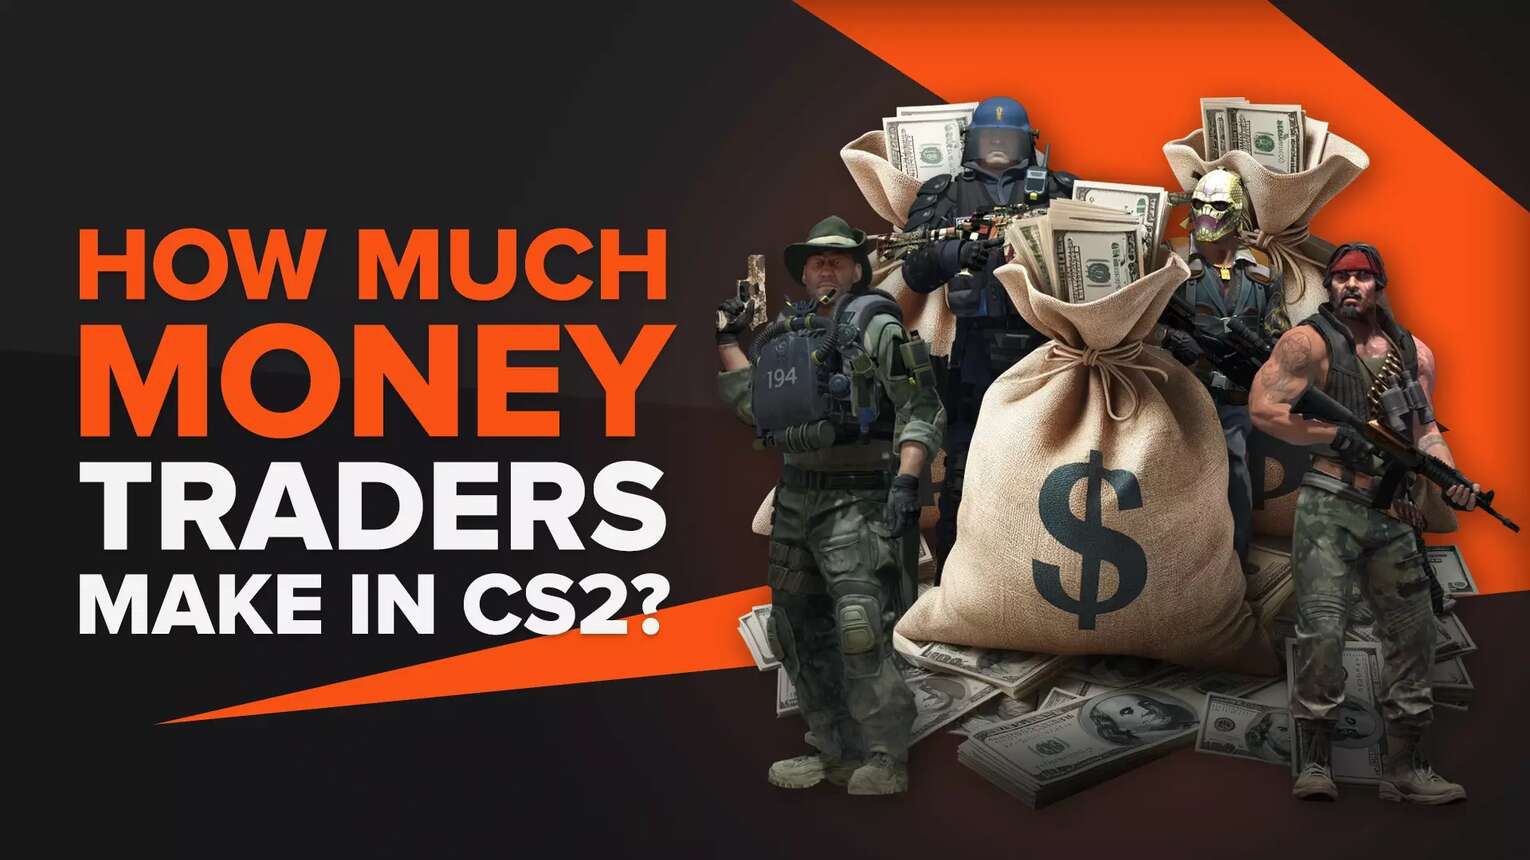 How Much Money Do CS2 (CSGO) Traders Make? (Revealed)